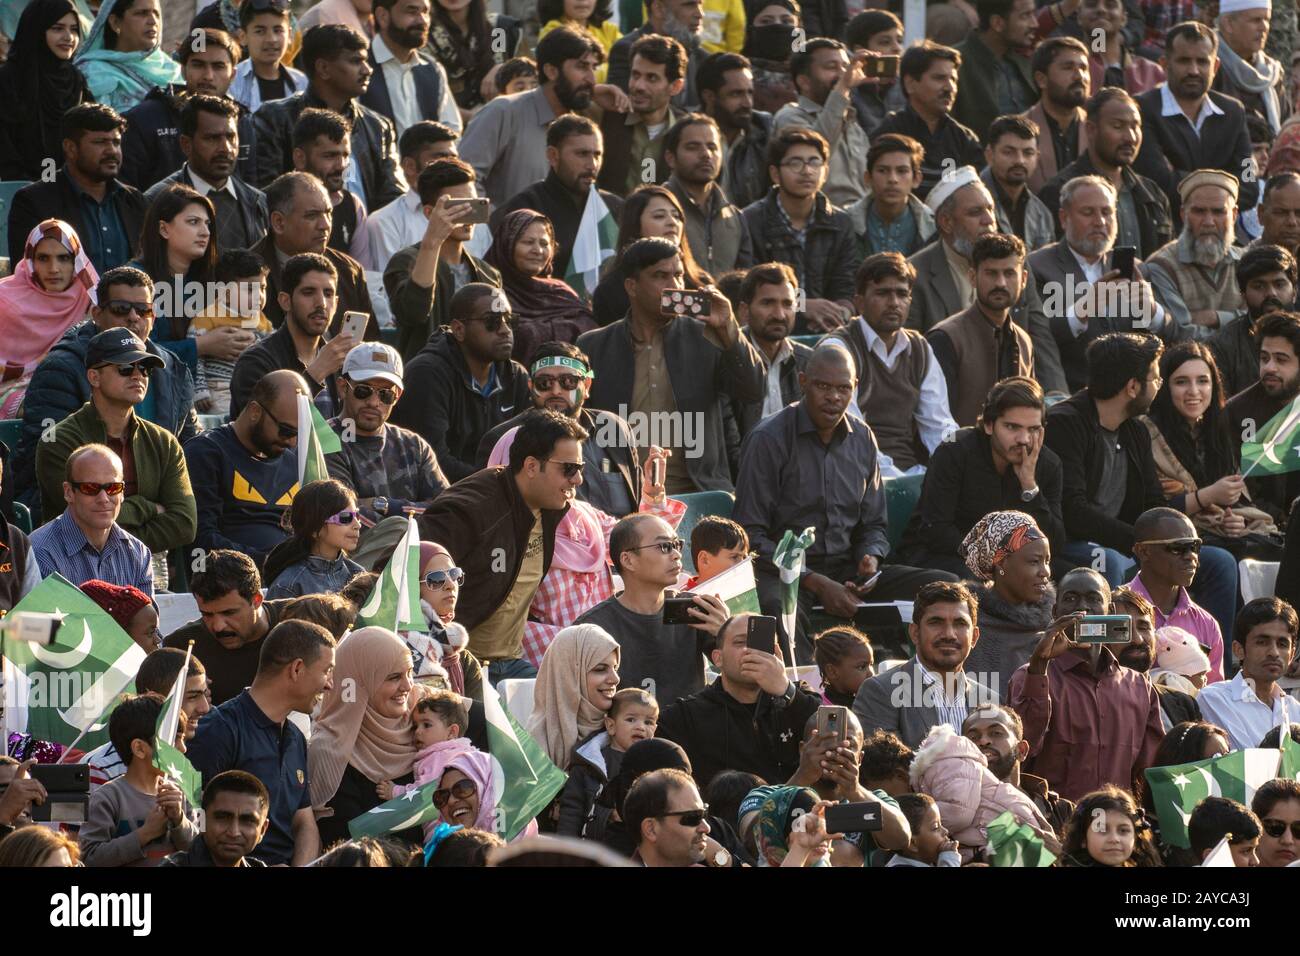 Wagah, Pakistan - 8 février 2020: Les ressortissants pakistanais se réunissent dans le stade pour assister à la cérémonie de clôture de la frontière de Wagah avec l'Inde Banque D'Images